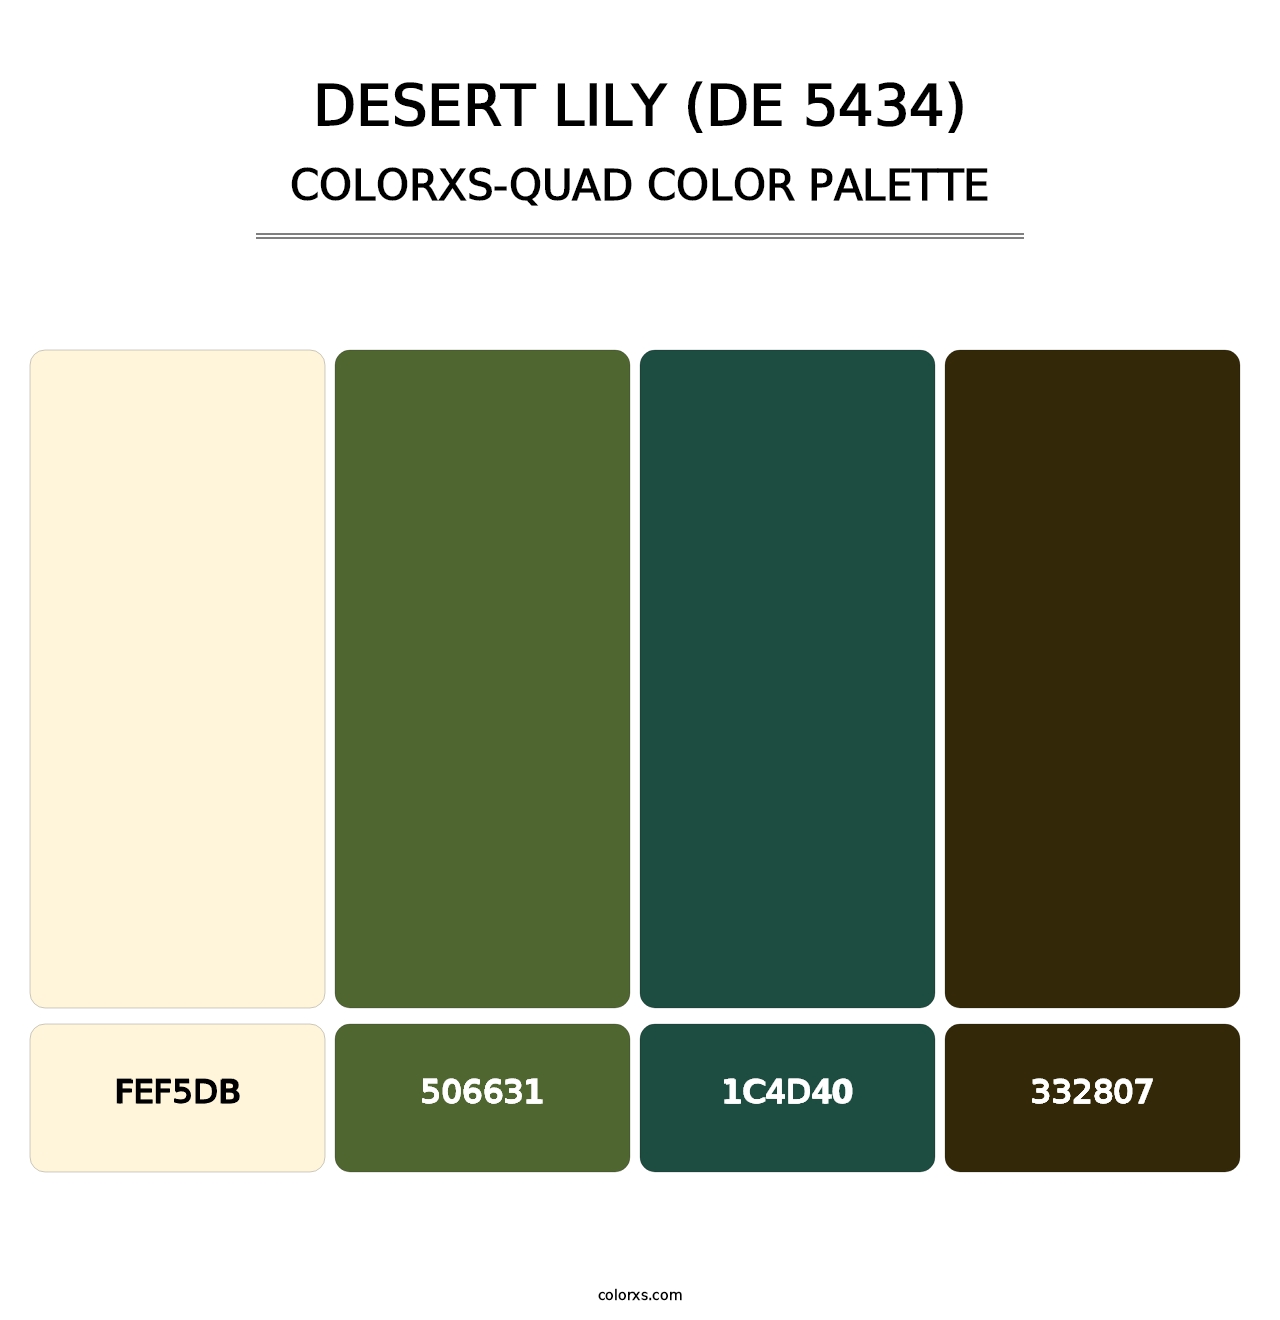 Desert Lily (DE 5434) - Colorxs Quad Palette